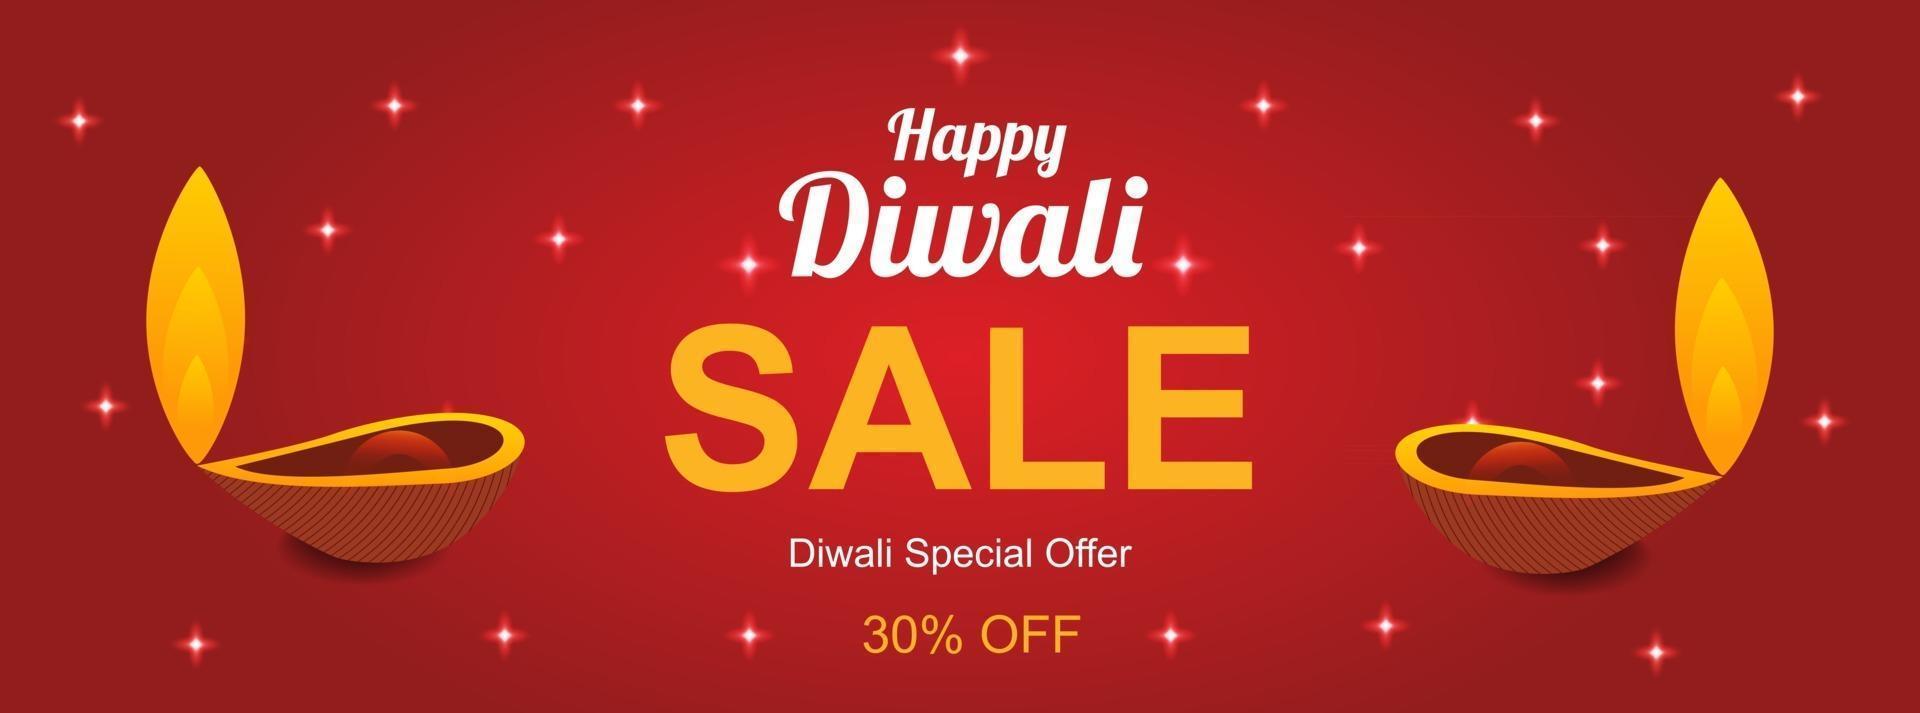 gelukkige diwali-verkoop sjabloon voor spandoek voor sociale media vector